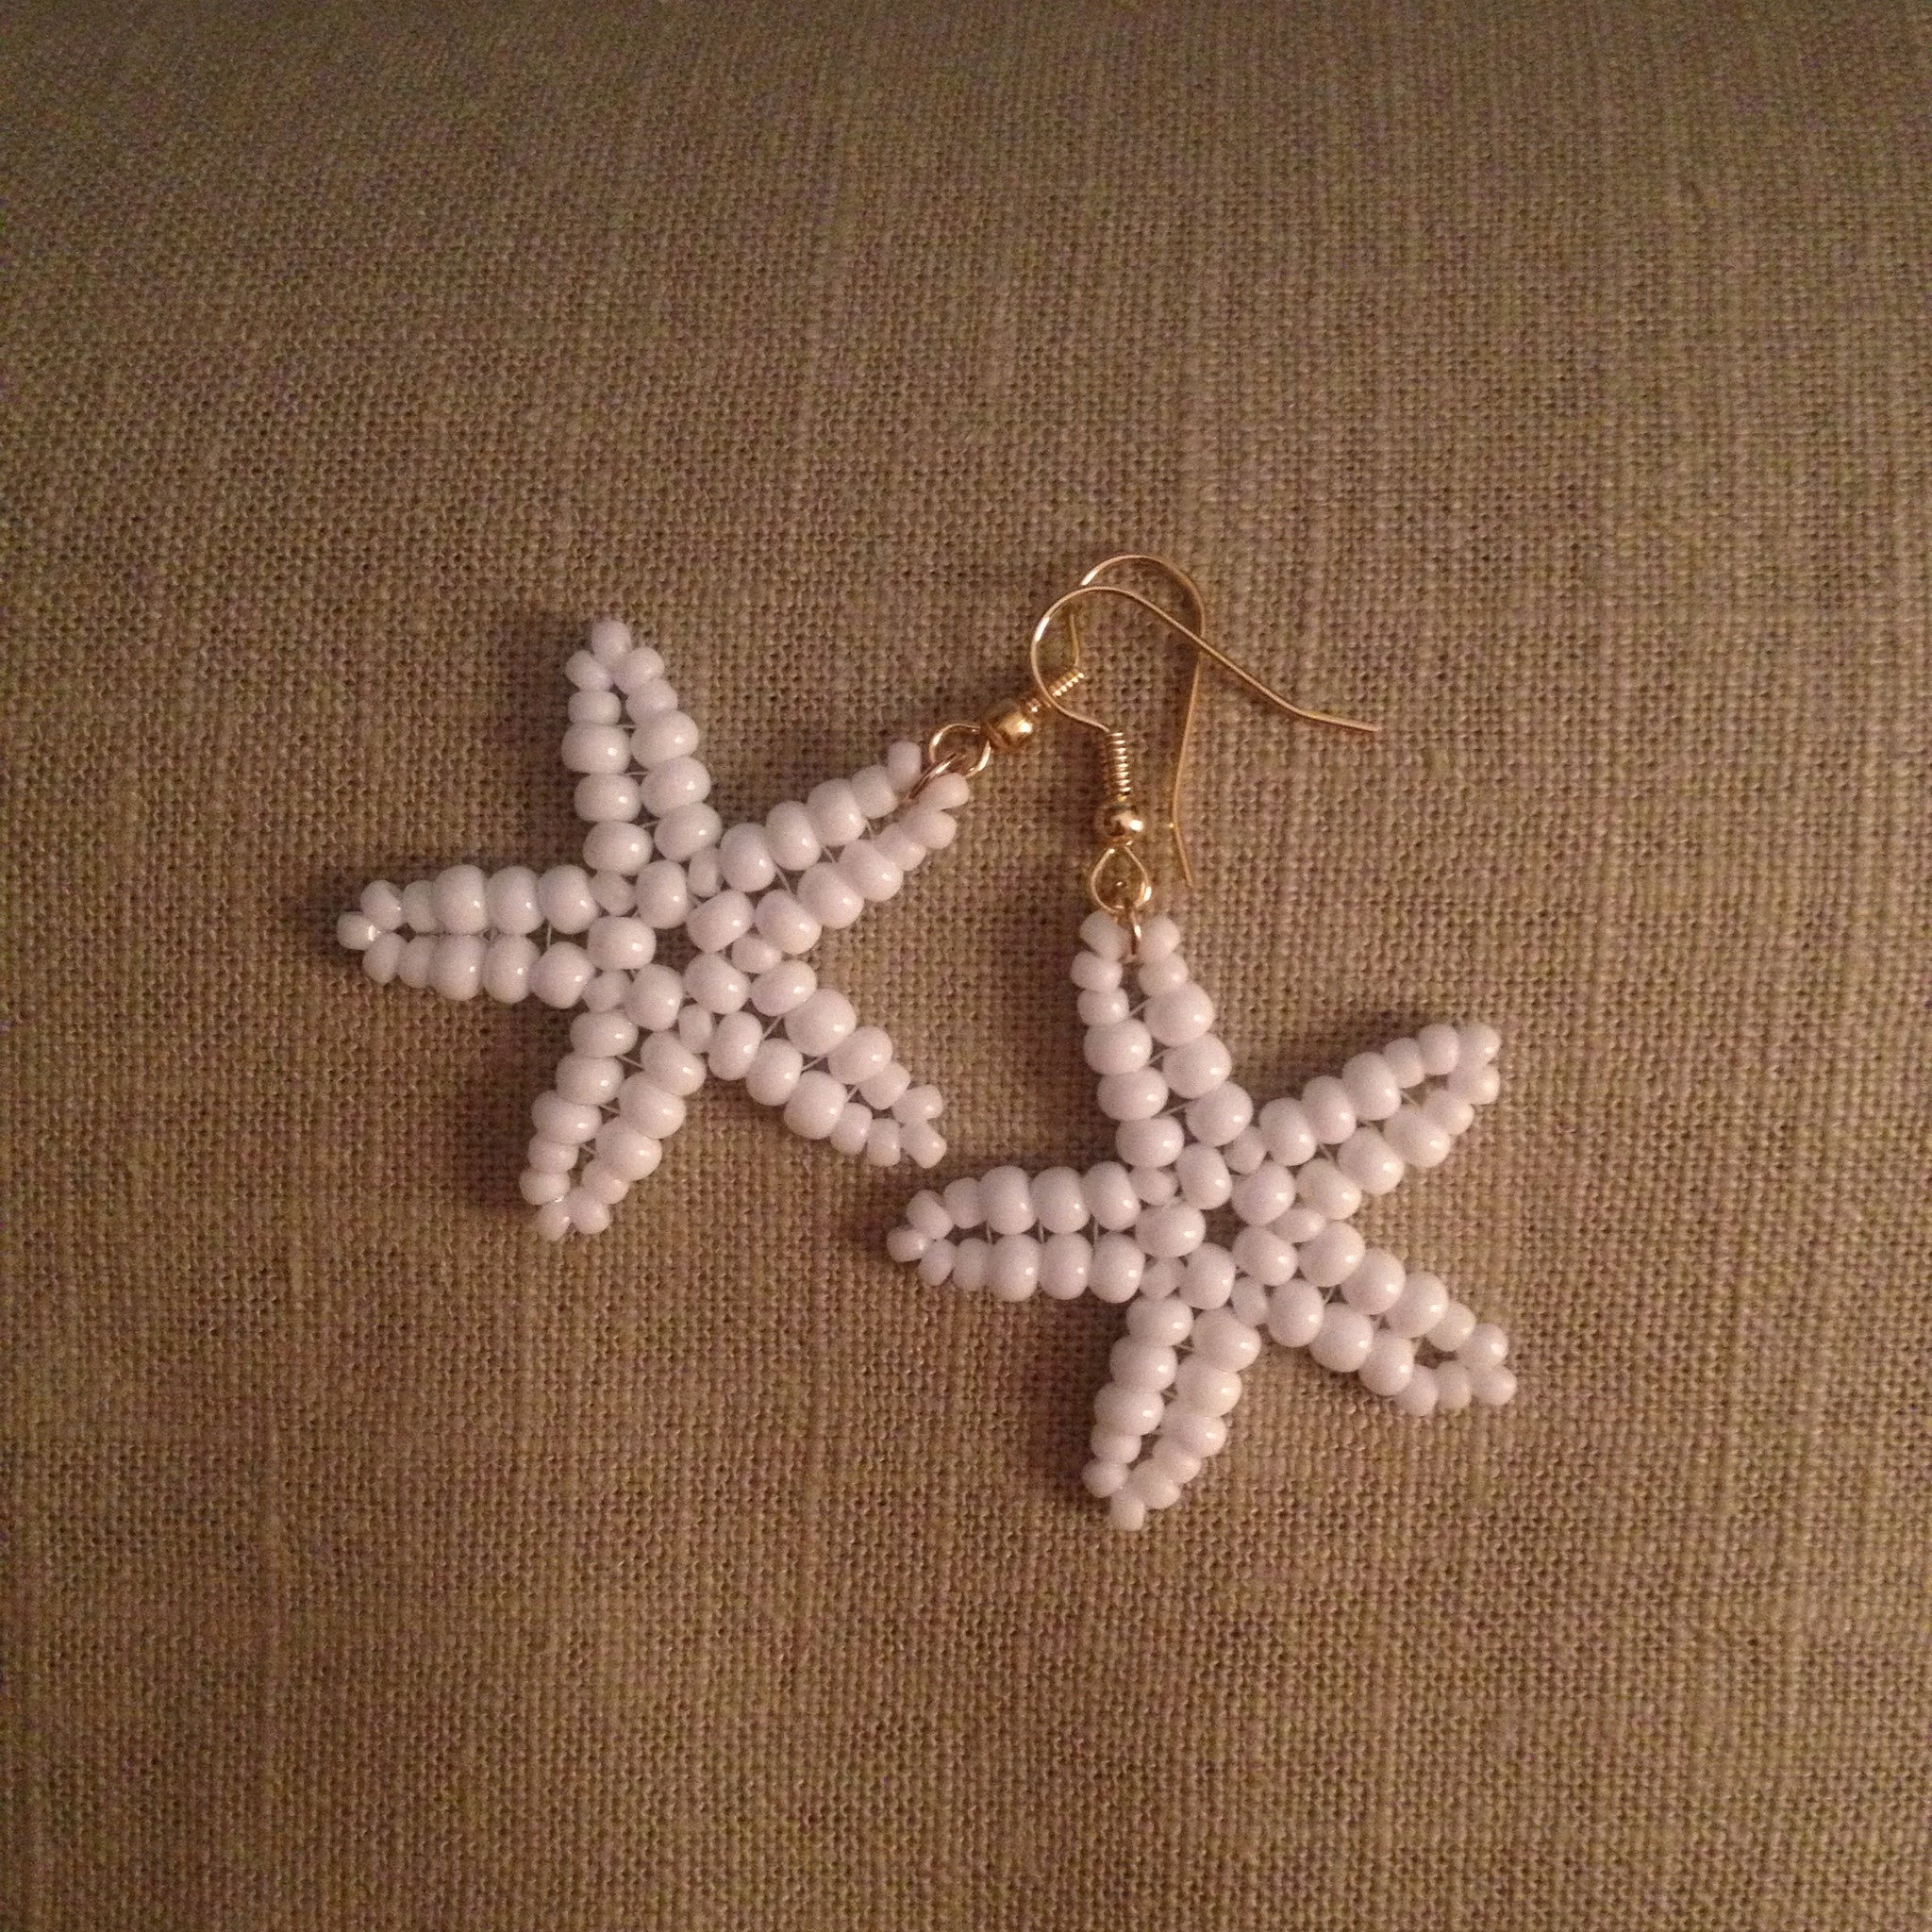 Starfish beaded handmade earrings white resort style cruise wear beachy fun